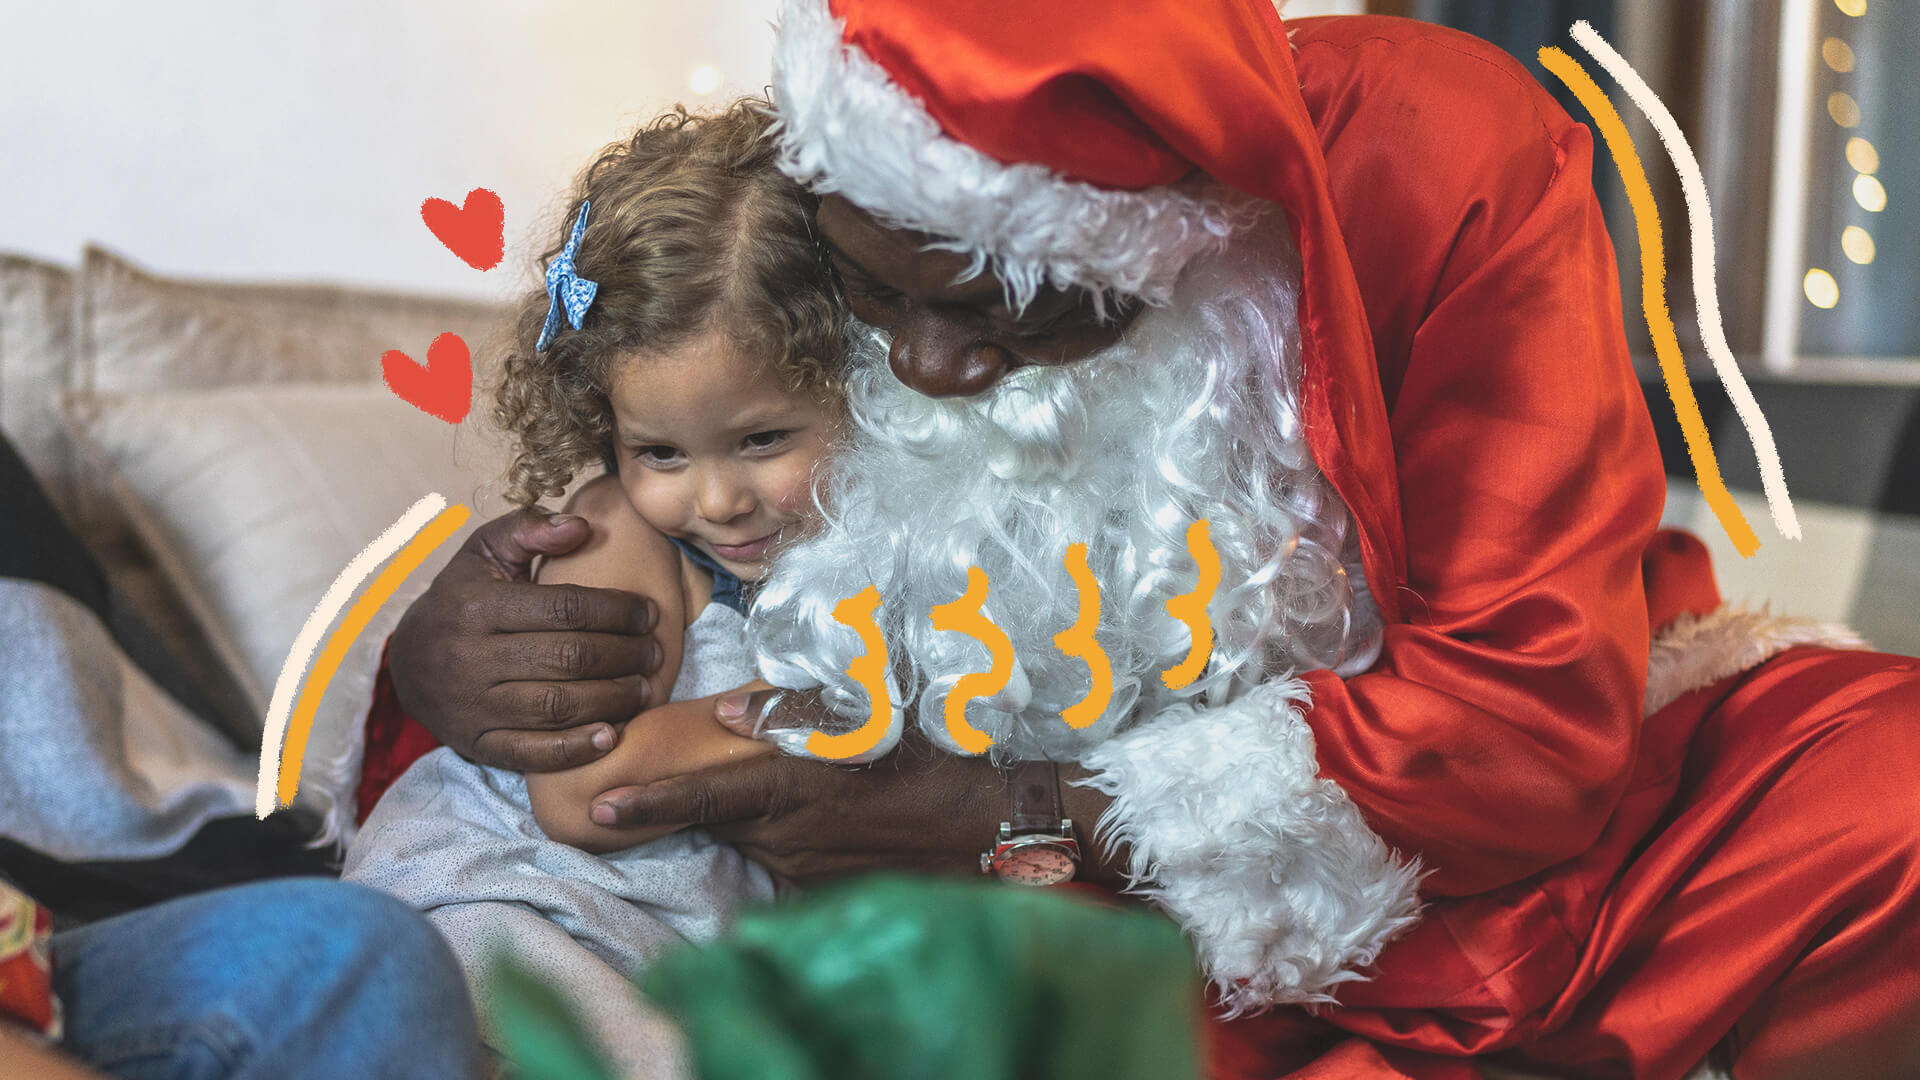 Na foto, uma menina recebe o abraço de um Papai Noel. A imagem possui intervenções de rabiscos coloridos.